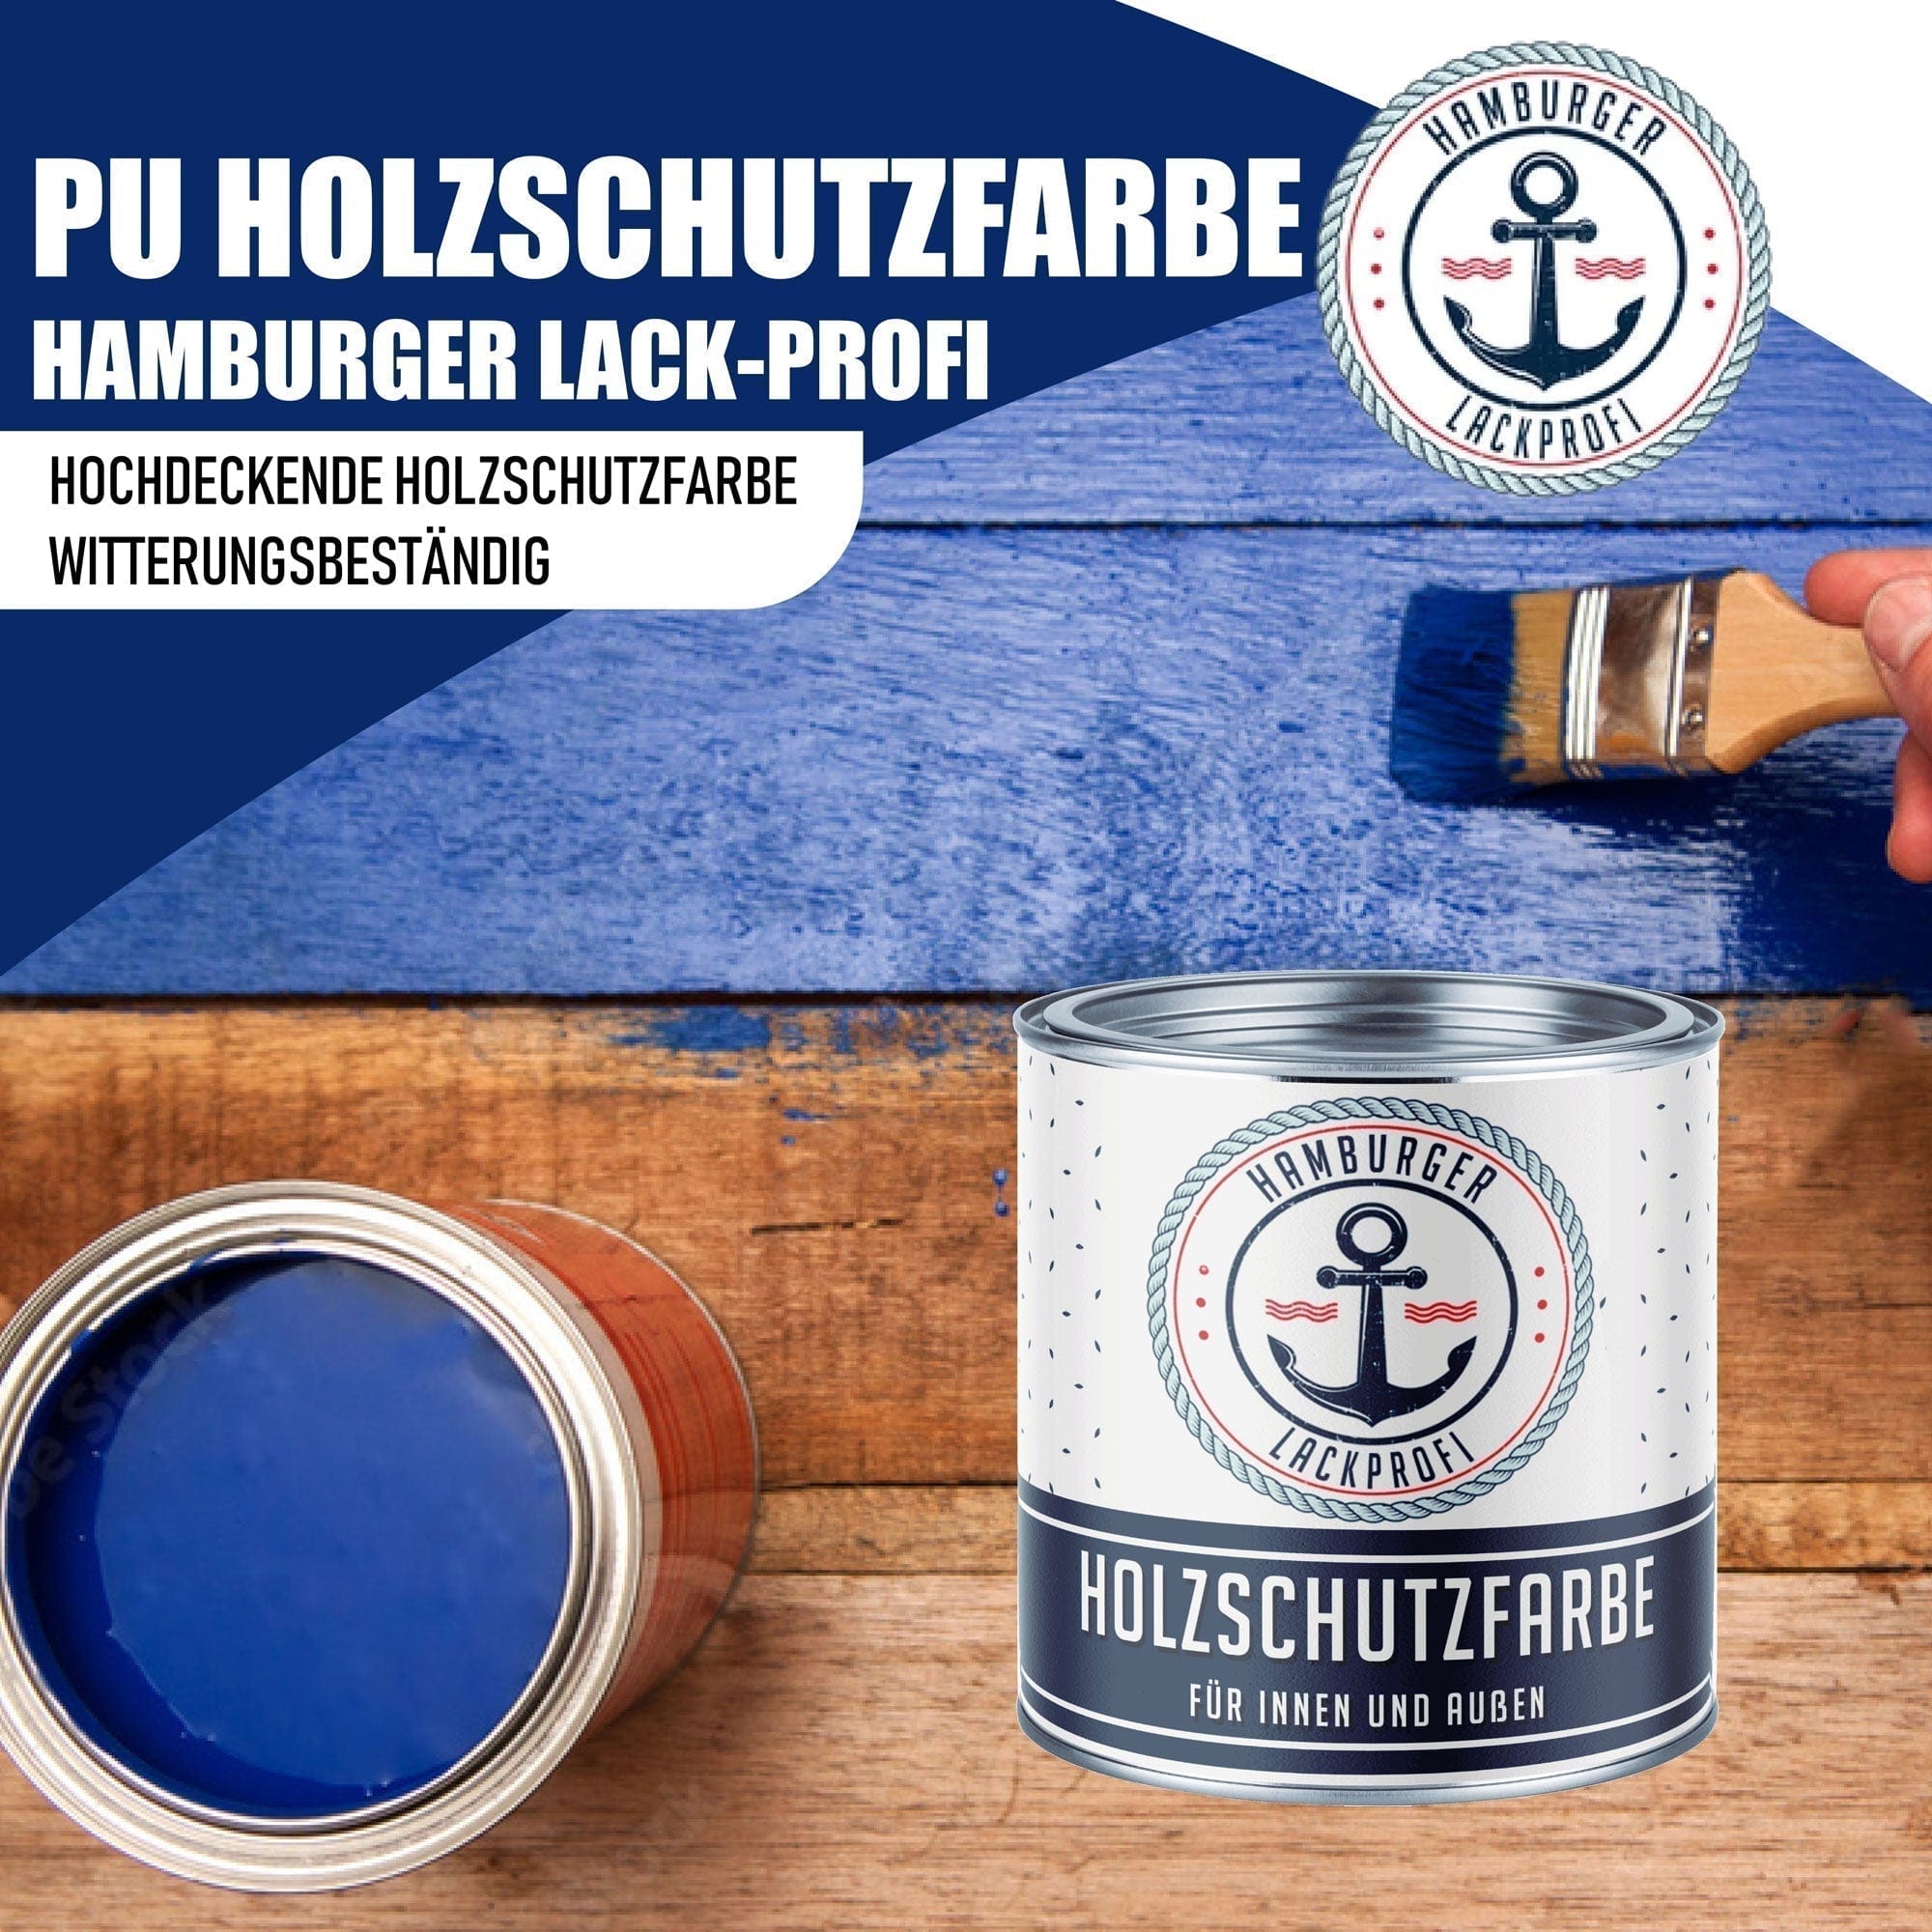 Hamburger Lack-Profi Lacke & Beschichtungen PU Holzschutzfarbe RAL 7005 Mausgrau - Wetterschutzfarbe